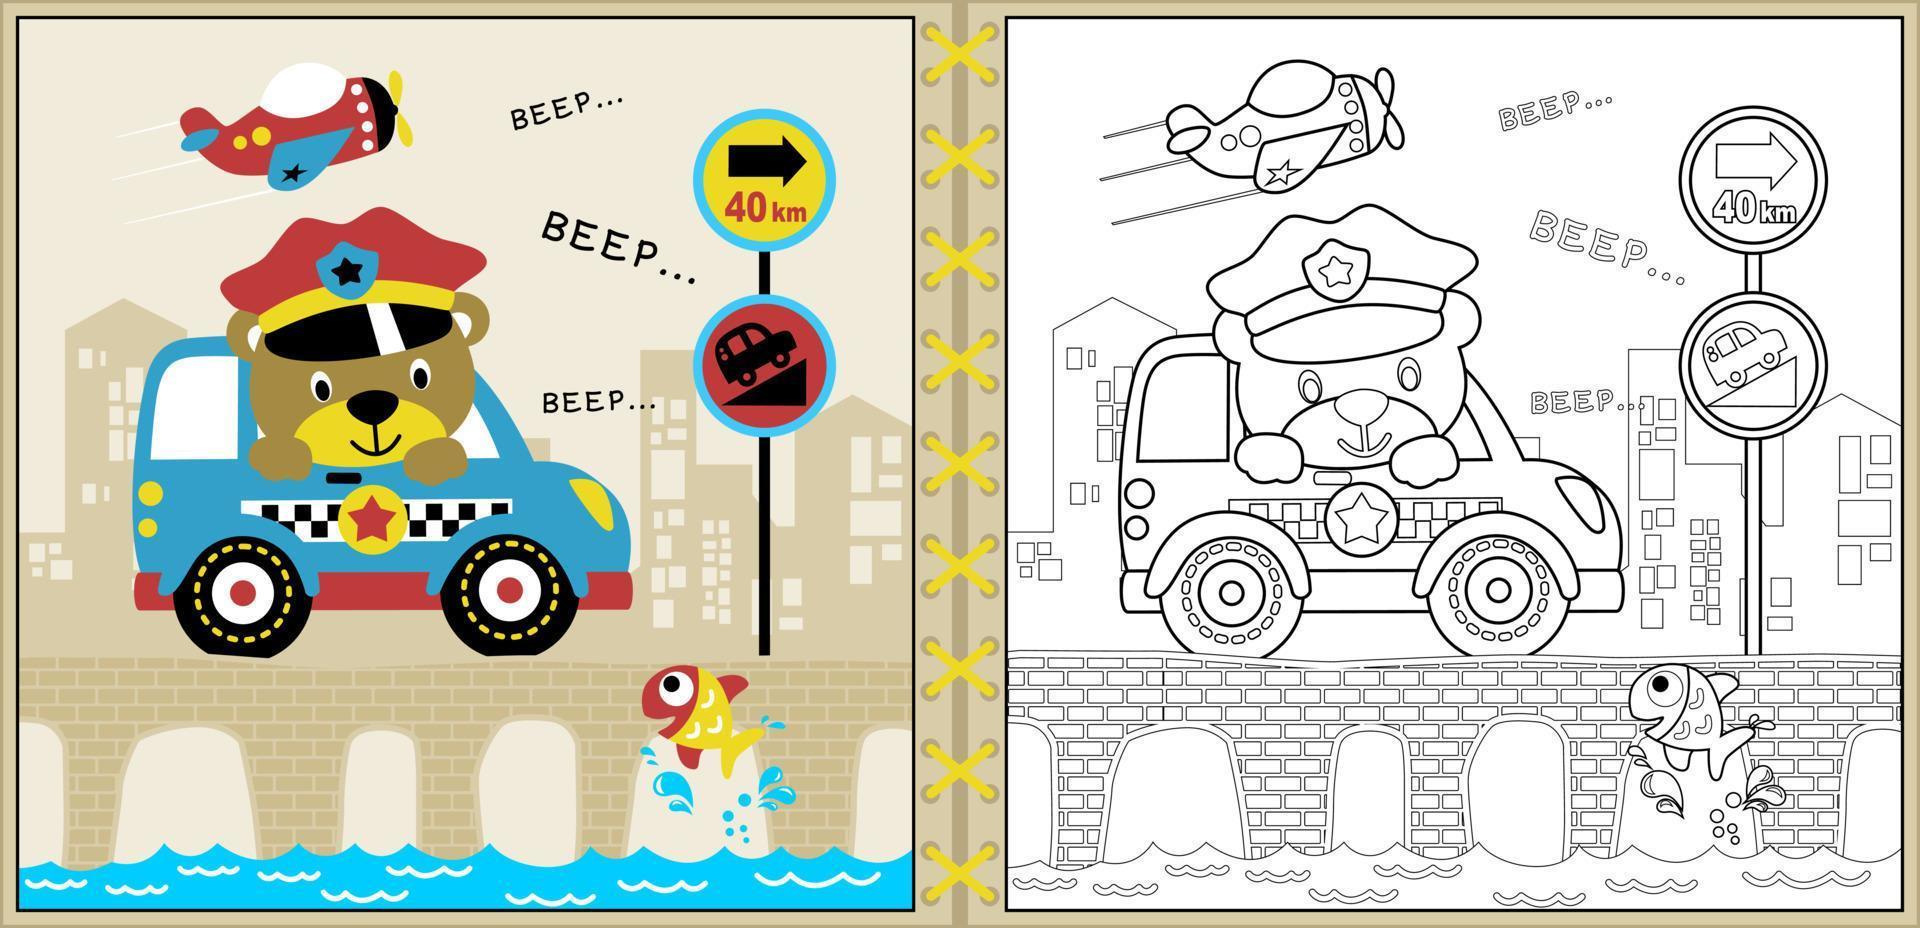 dessin animé vectoriel d'une voiture de police en voiture d'ours mignon sur un pont avec un poisson, des éléments de transport, une page de coloriage ou un livre